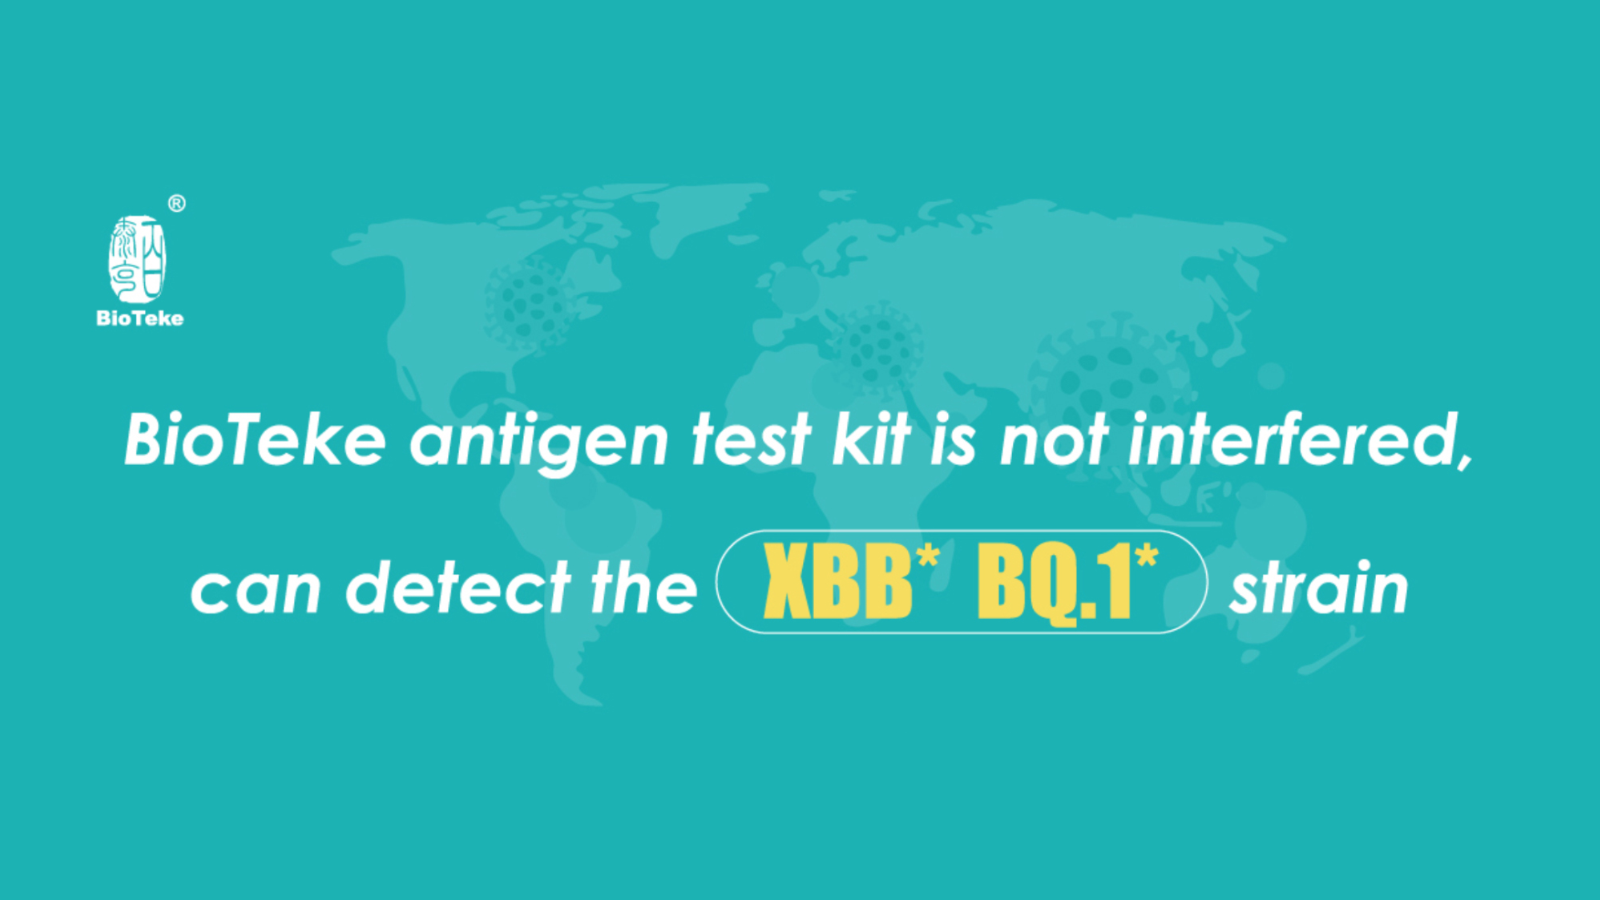 ¡Los kits de prueba de antígeno BioTeke SARS-CoV-2 pueden detectar cepas XBB y BQ.1!